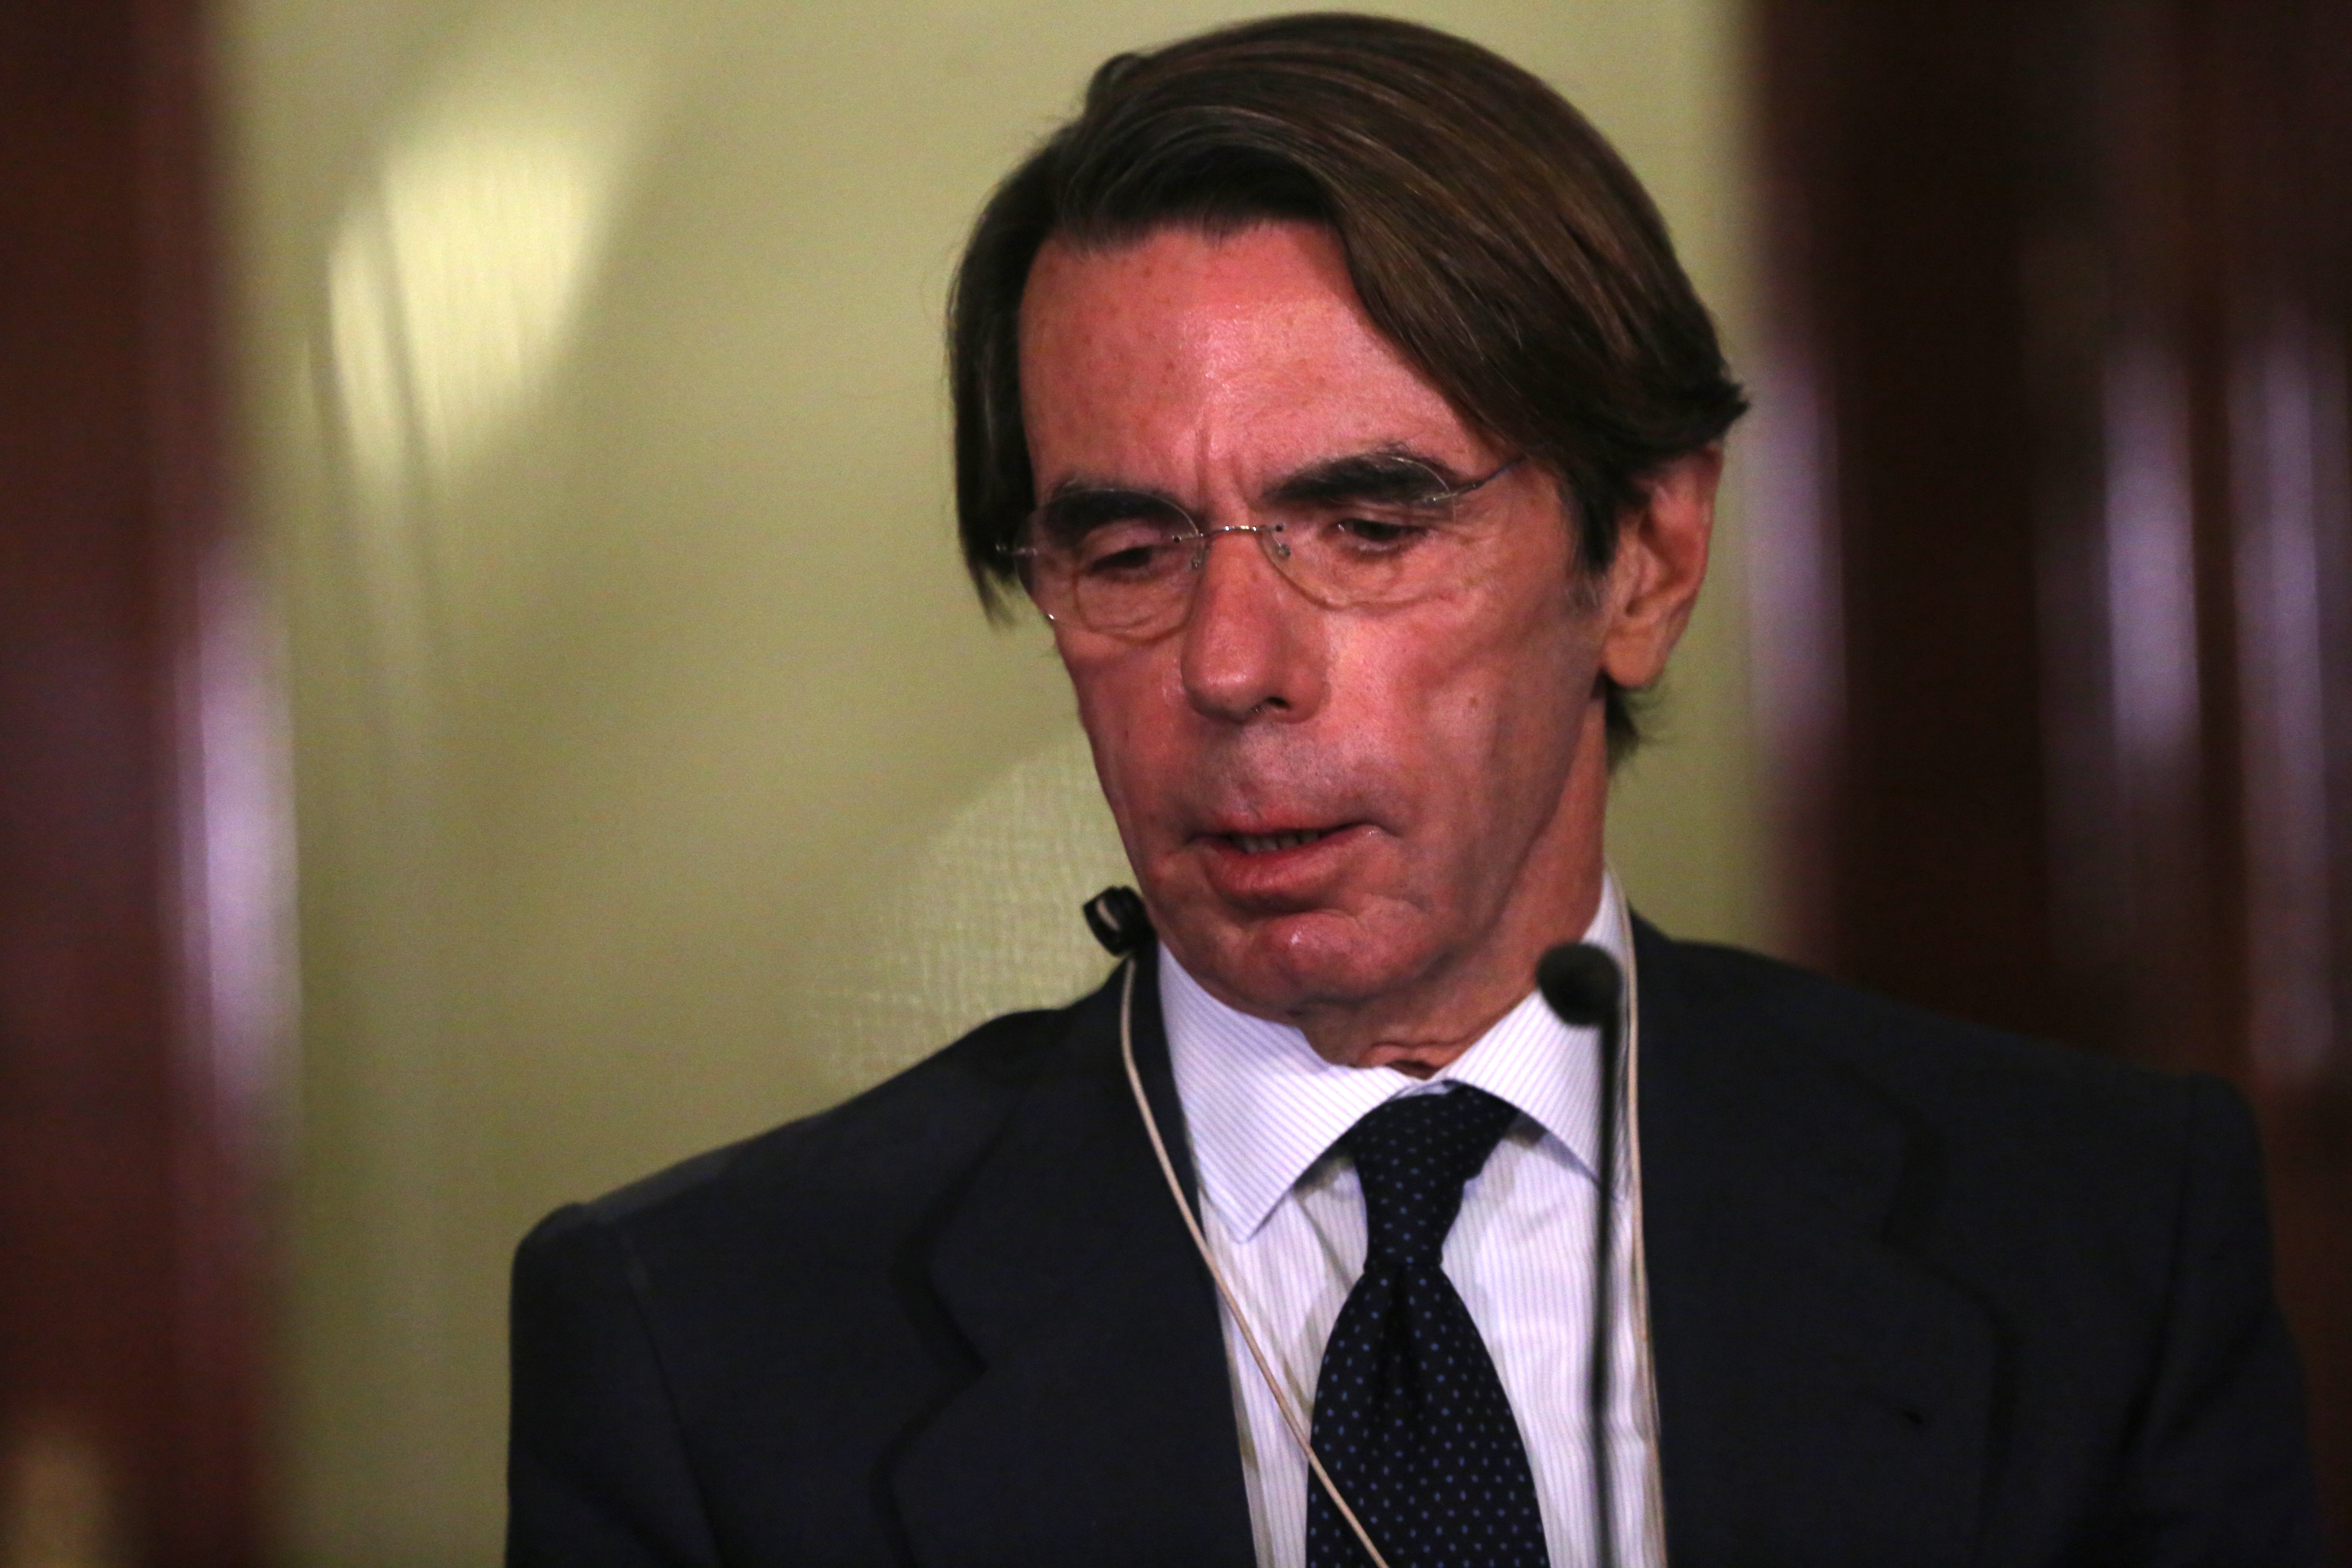 El càrrec vitalici d'Aznar: ja ha guanyat 3,5 milions del grup de Rupert Murdoch